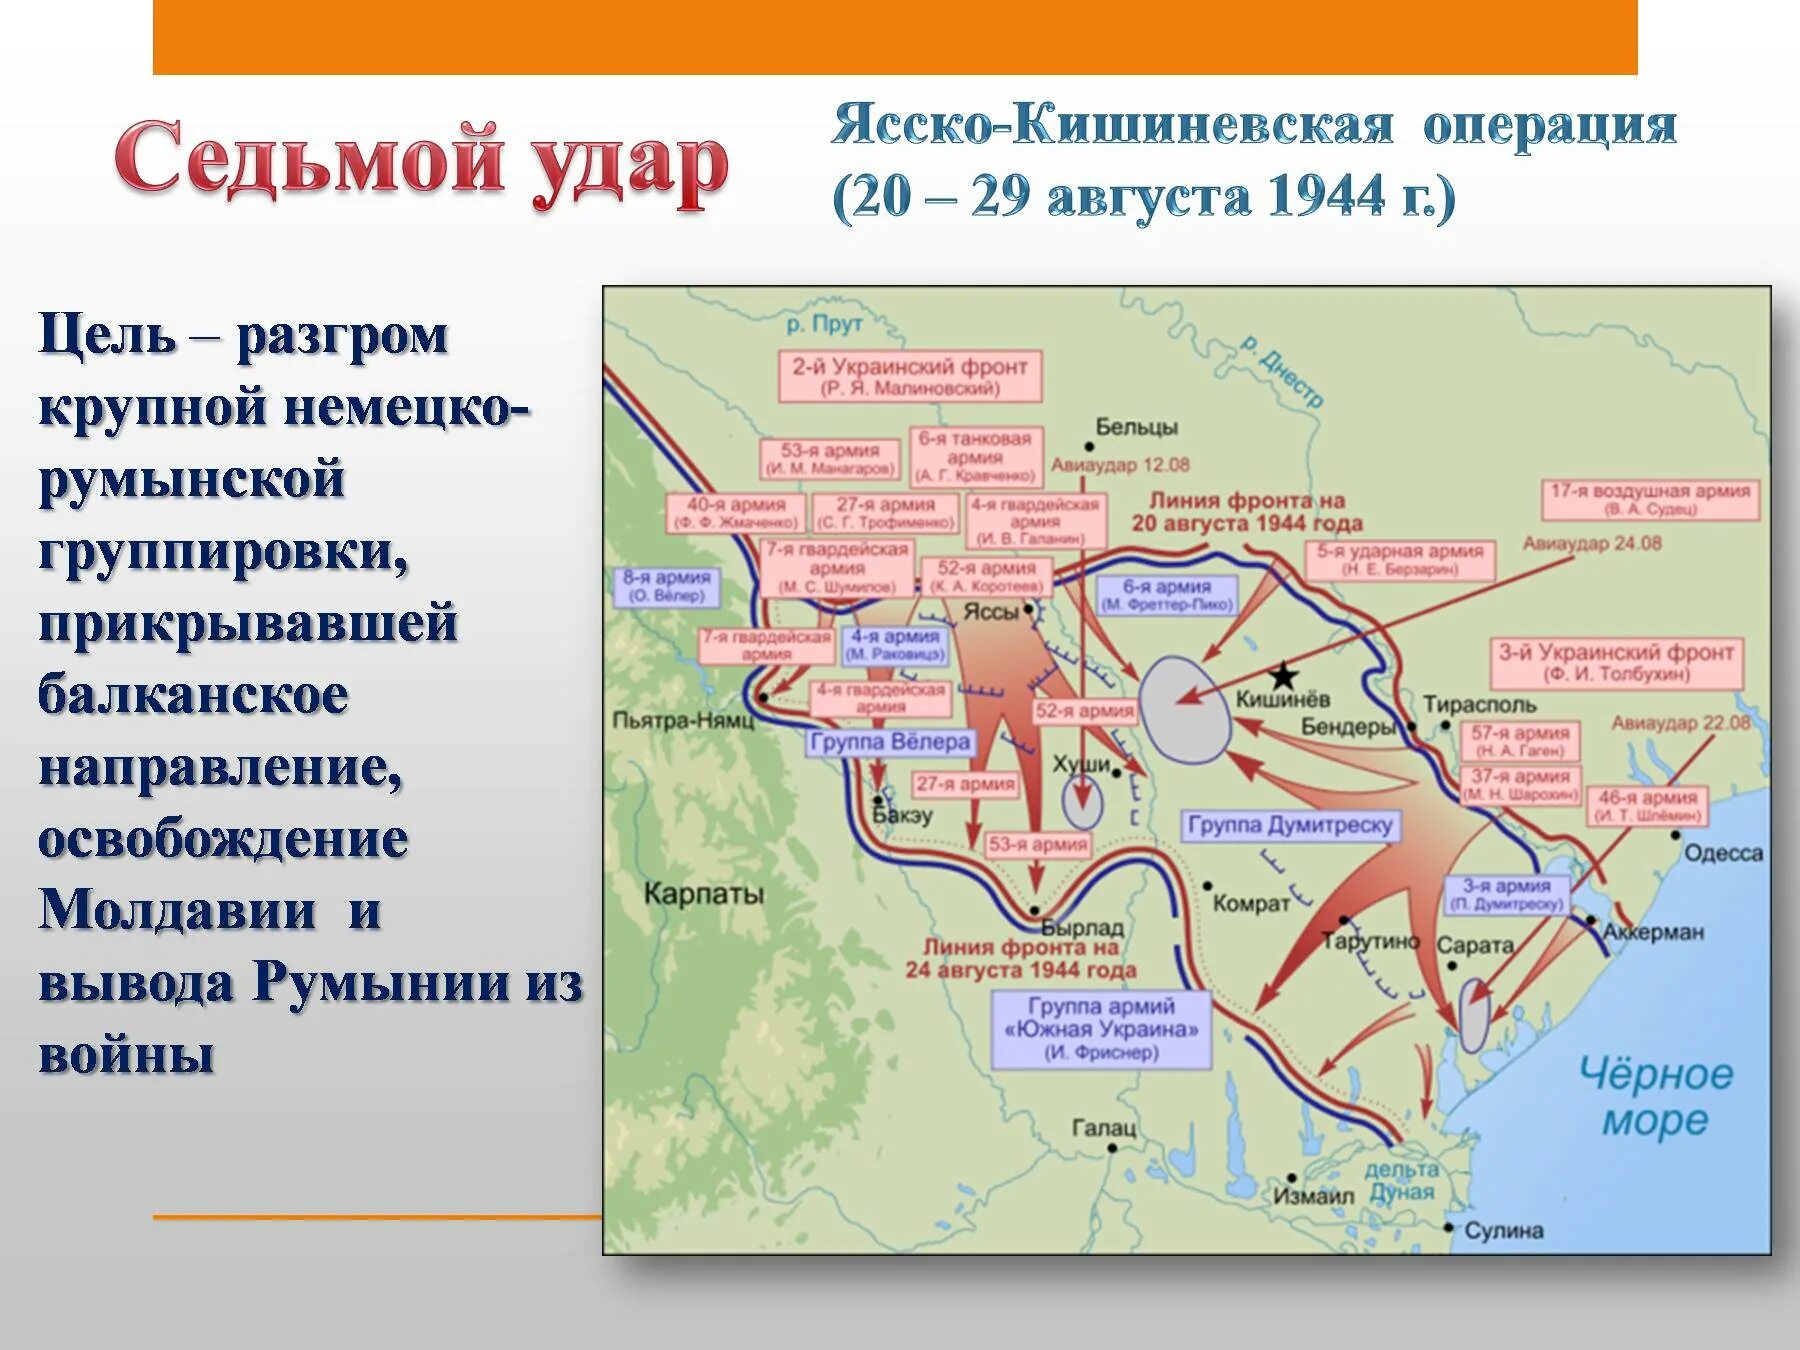 10 операций в 1944. Ясско-Кишинёвская наступательная операция (август—сентябрь 1944 г.). Освобождение Молдавии Ясско Кишиневская операция. Ясско- Кишиневская операция 20 -29 августа 1944 года. Седьмой удар Ясско-Кишиневская операция.